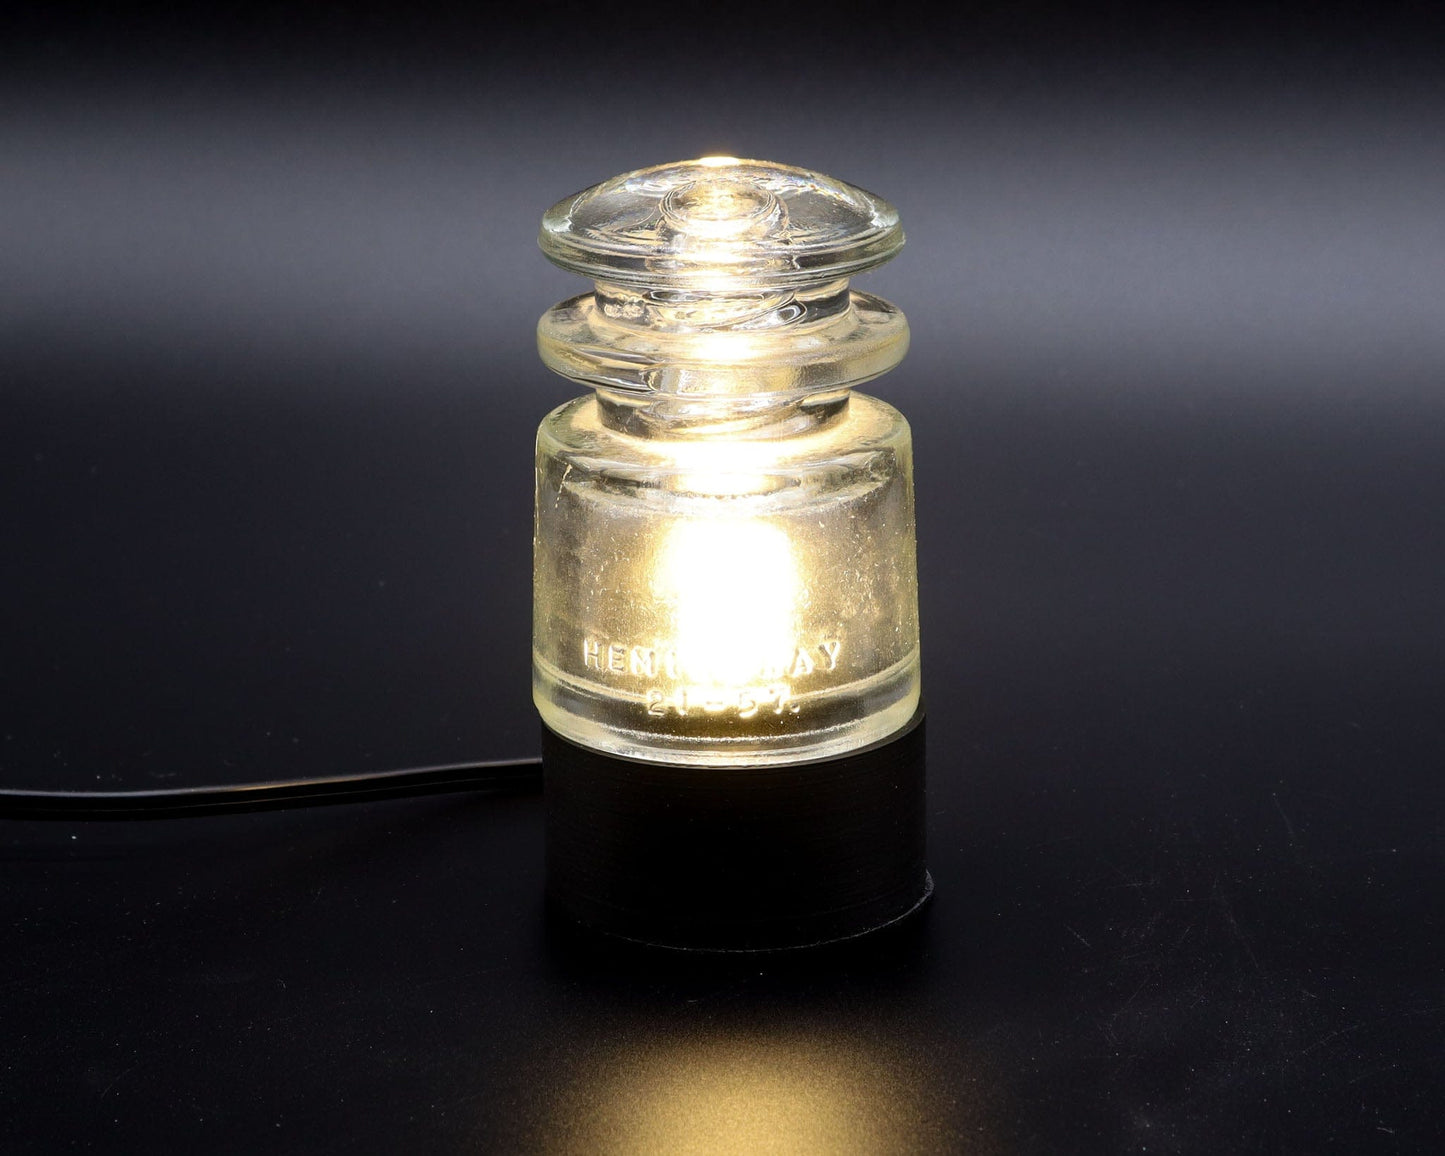 LightAndTimeArt Lamp base Lamp Base for "Hemingray TS" Glass Insulators, Industrial Lighting, Man Cave Decor